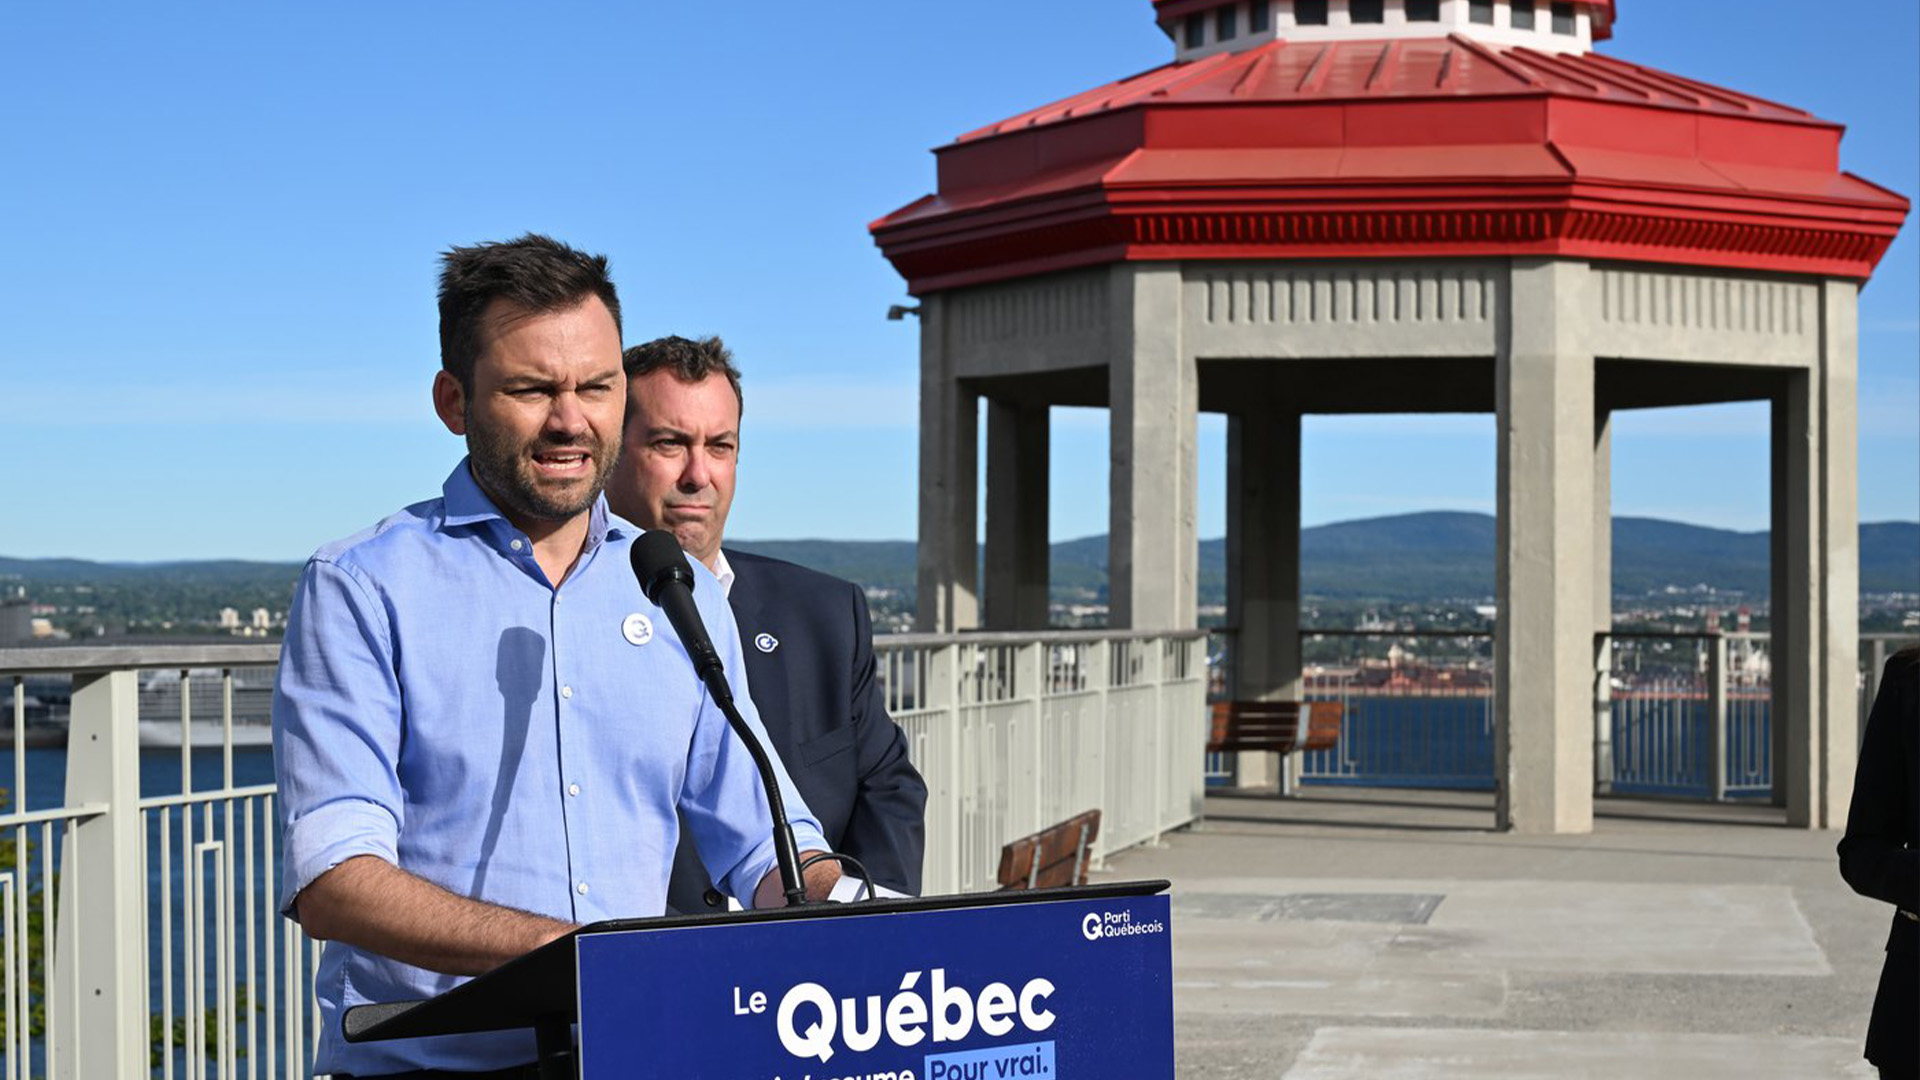 Le chef du Parti québécois, Paul St-Pierre Plamondon, parle de l'immigration lors de l'arrêt de la campagne, le lundi 5 septembre 2022 à Lévis, au Québec. Le candidat de Masson, Stéphane Handfield, regarde à droite.